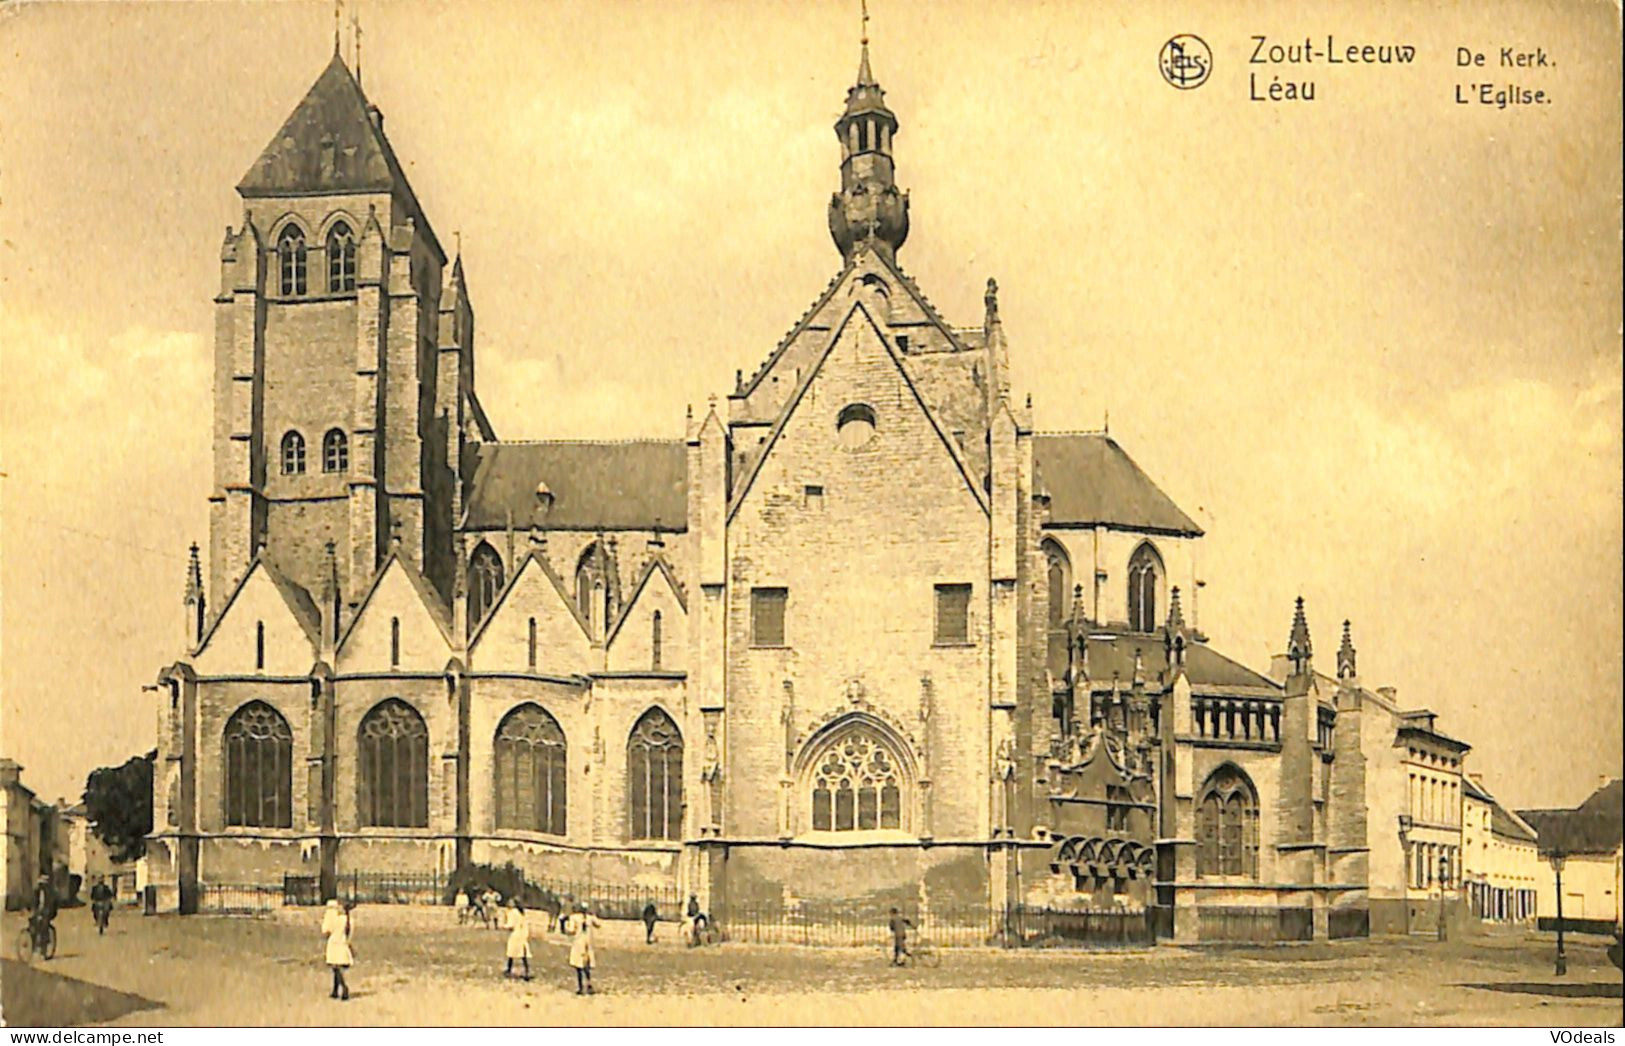 Belgique -  Brabant Flamand - Zoutleeuw - Zout-Leeuw - De Kerk - Léau - L'Eglise - Zoutleeuw